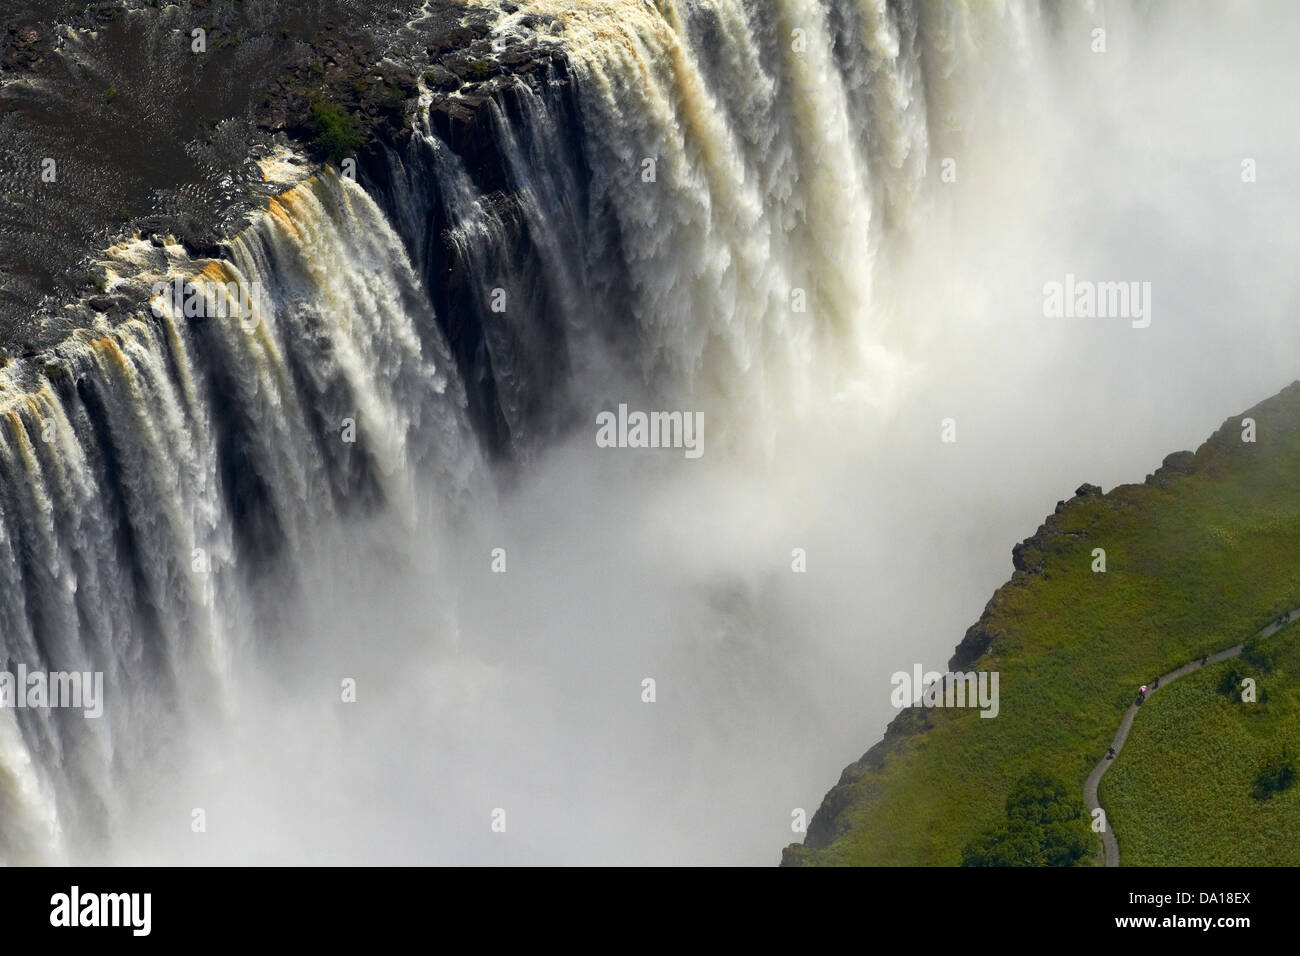 Touristen auf Pfad anzeigen von Victoria Falls oder "Mosi-Oa-Tunya" (der Rauch, der donnert) und Sambesi, Simbabwe / Sambia Stockfoto